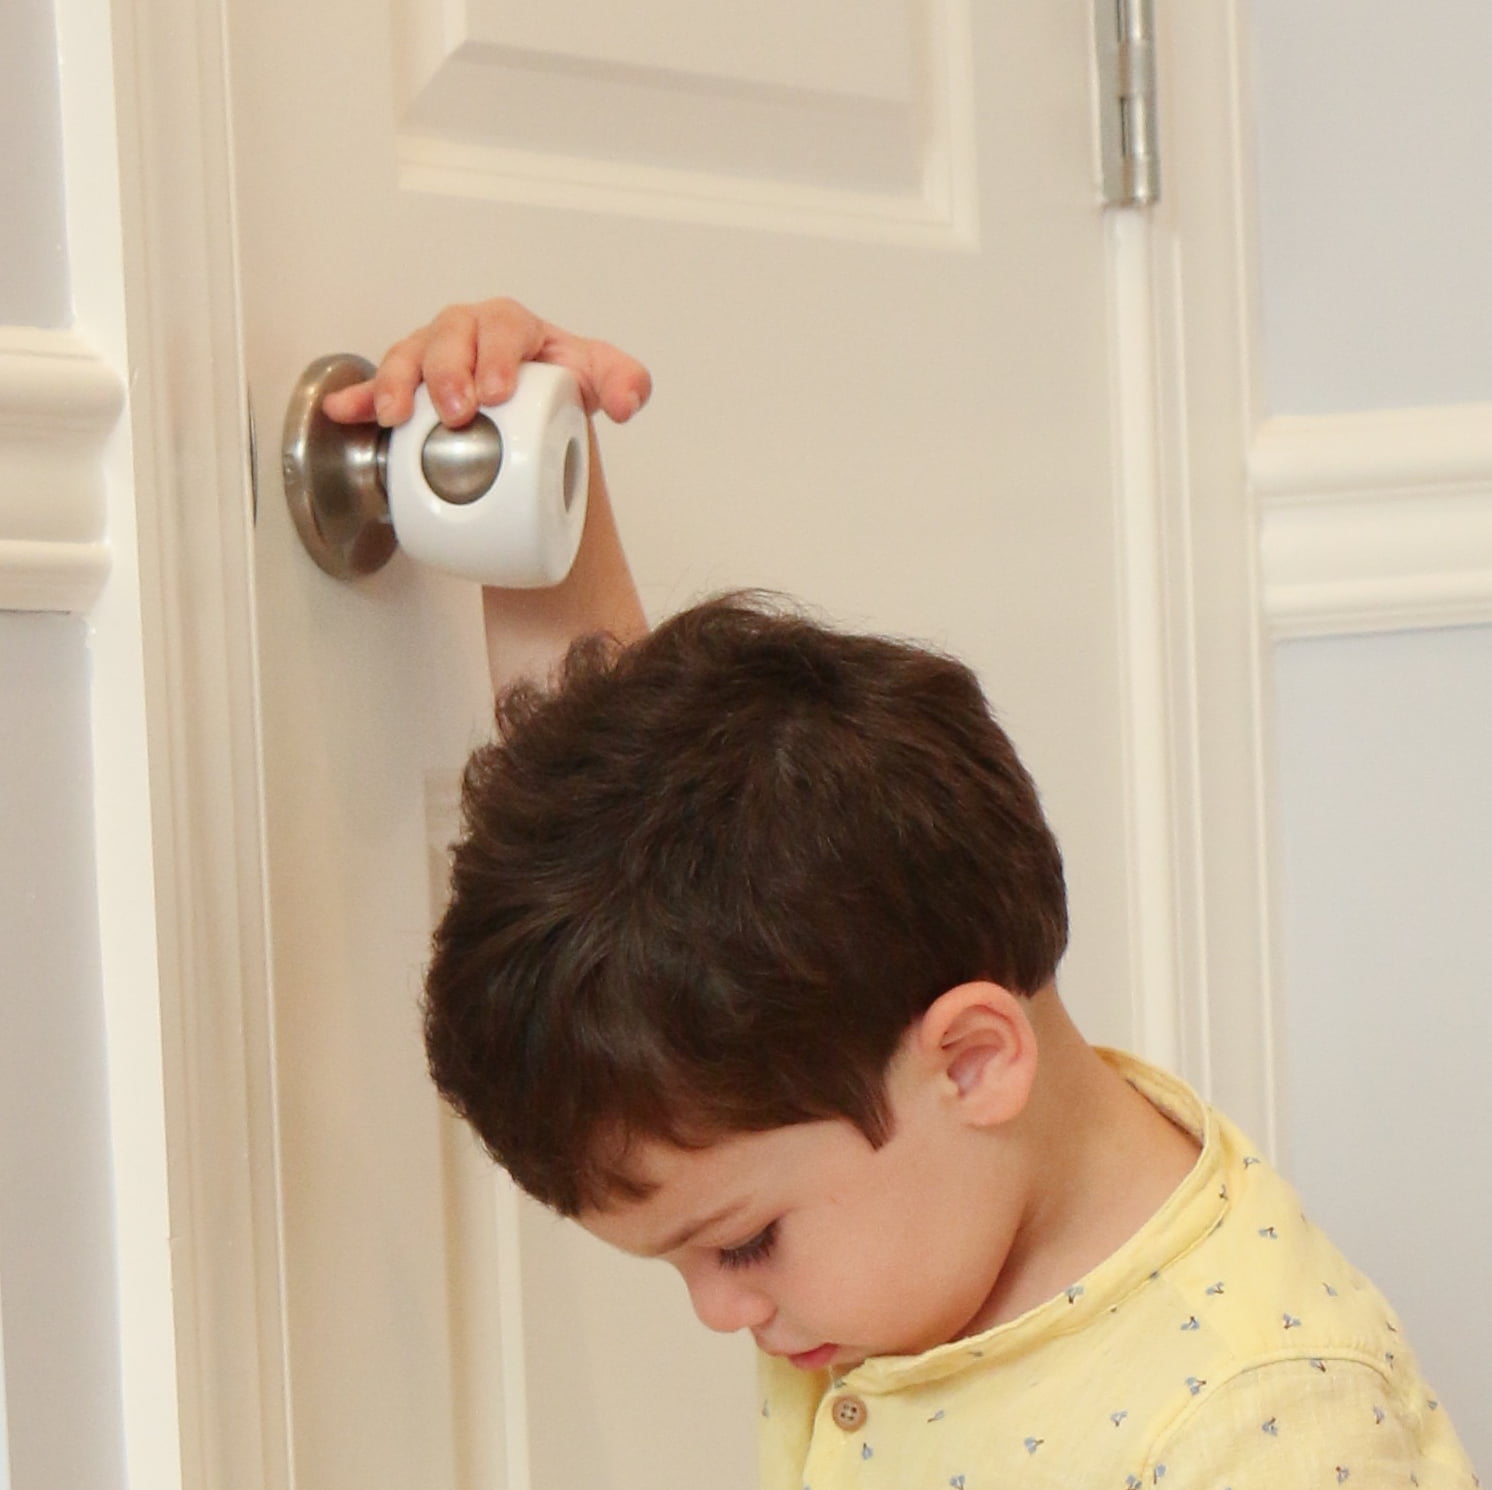 Baby Safety Door Knob Cover Babyproof 4 Pack Door Handle Security Lock for Lever 